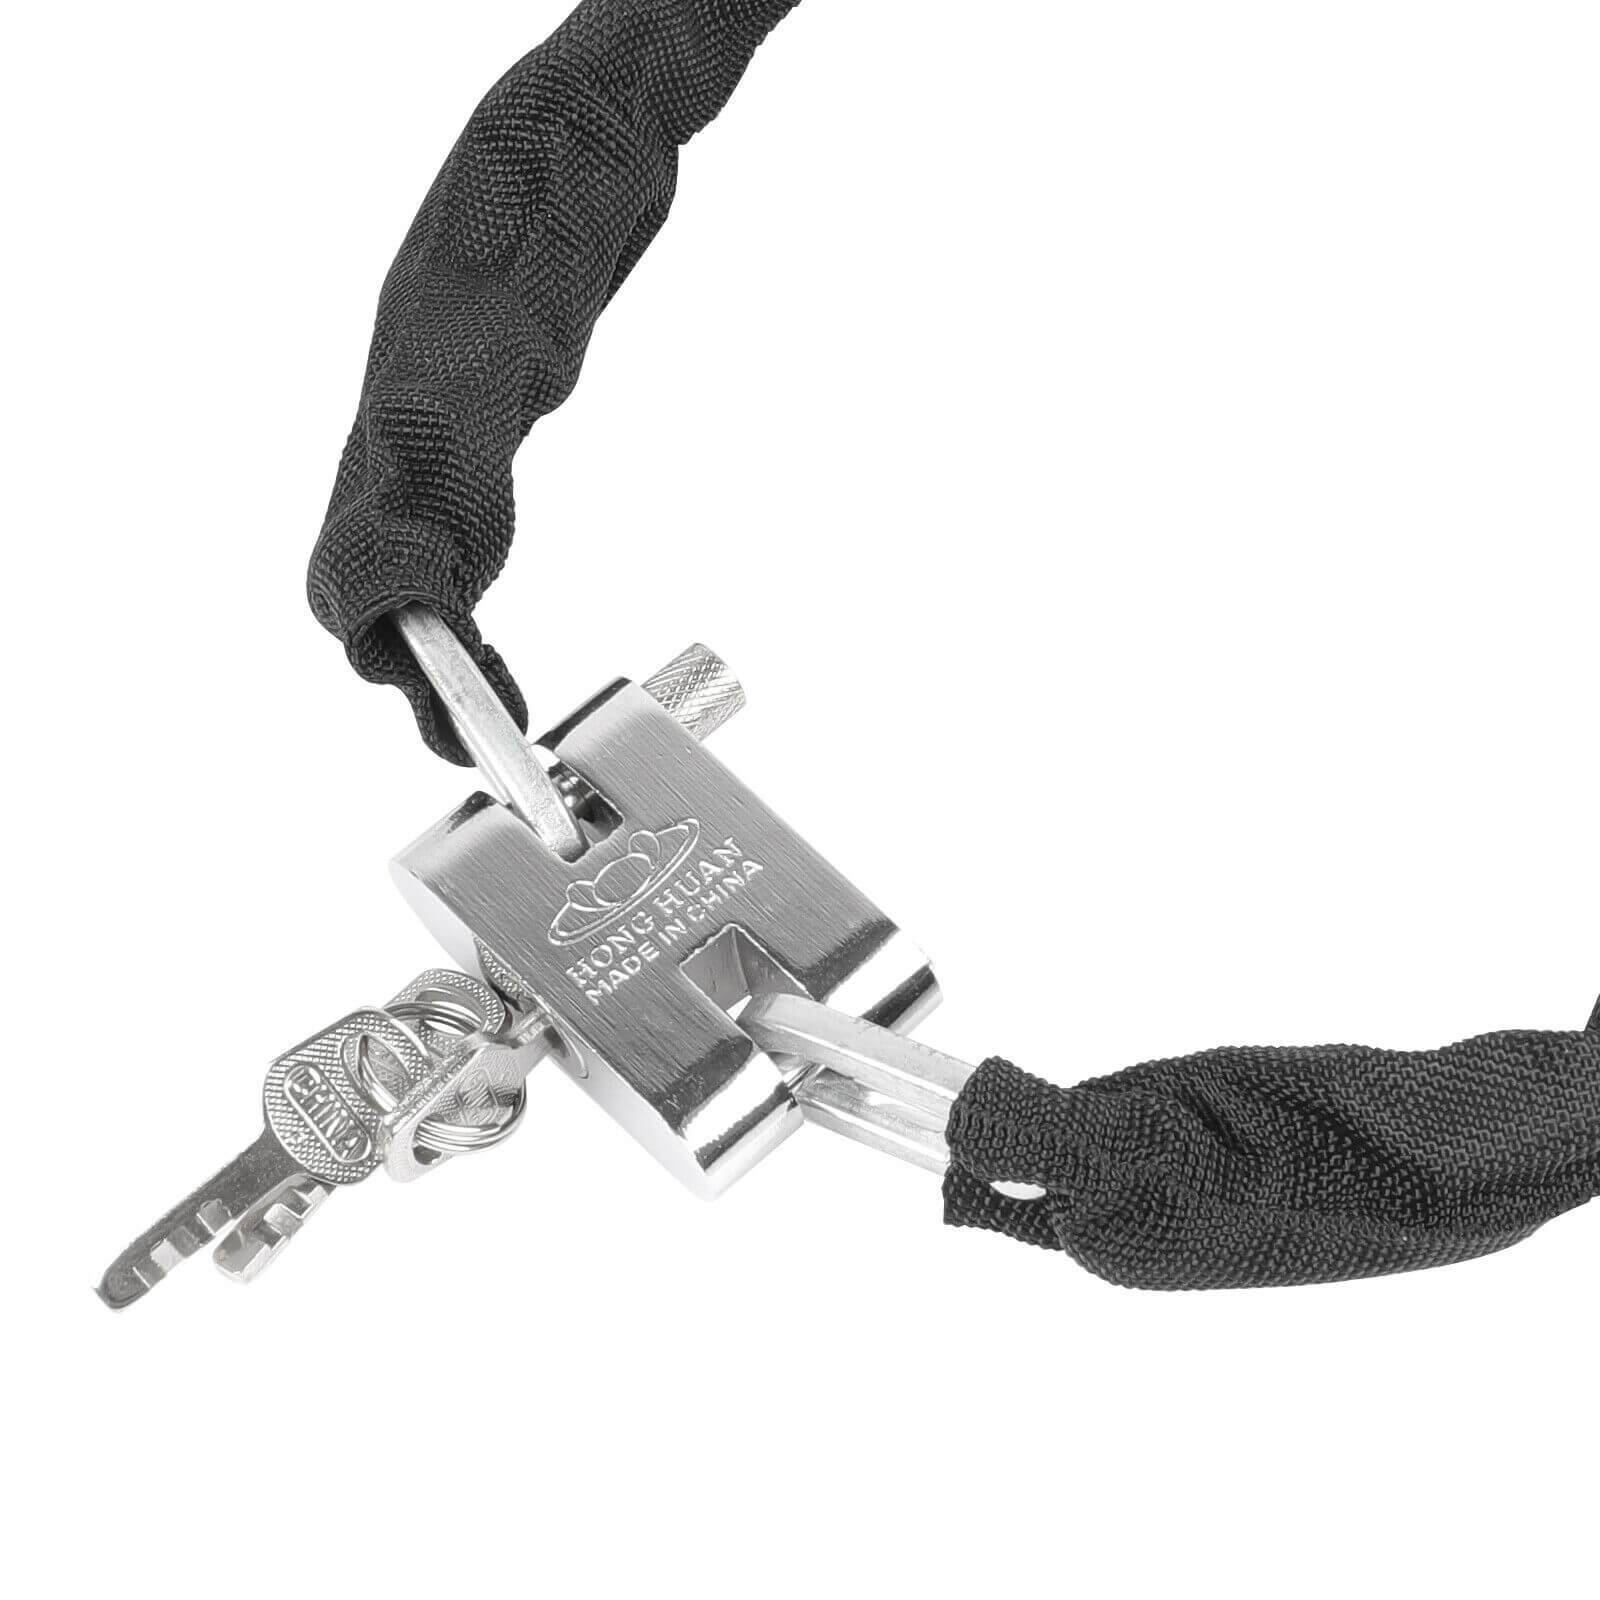 Lock and Keys of Heavy Duty Motorcycle Bike Chain Lock